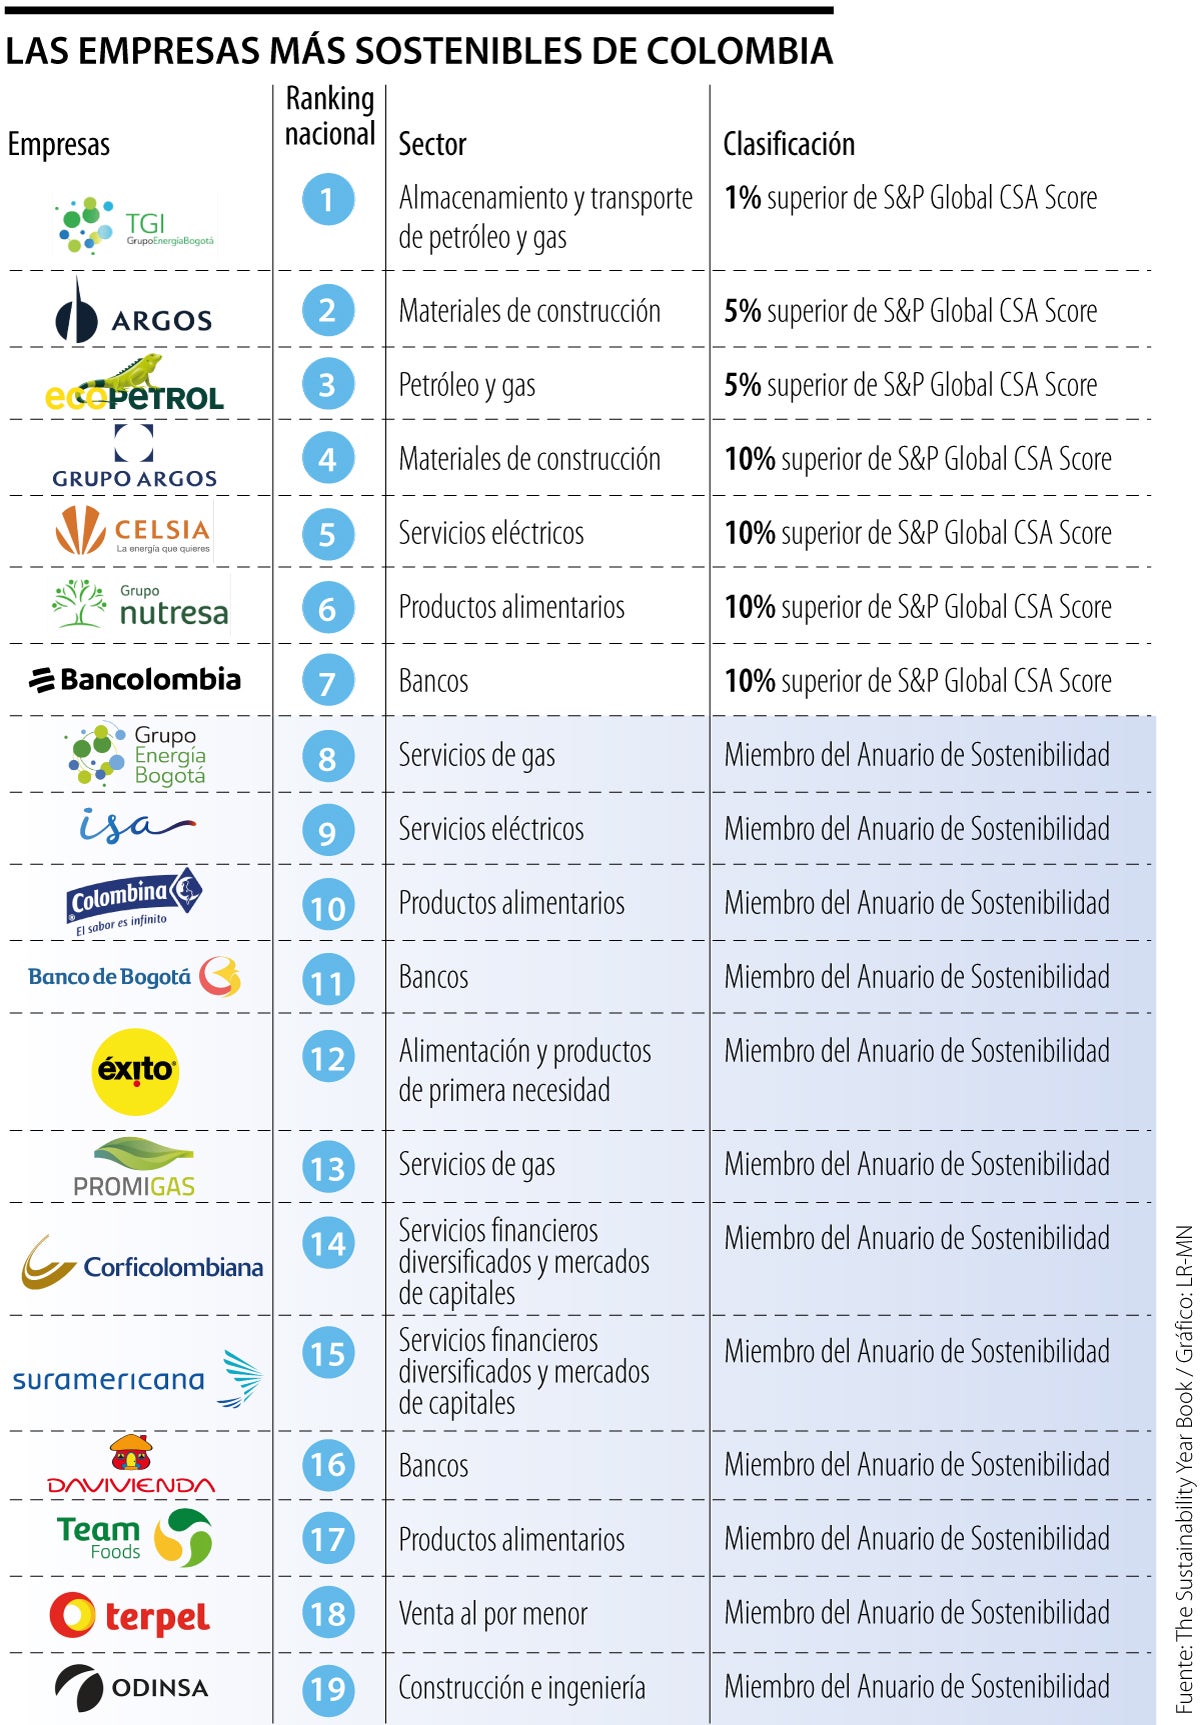 Las 19 empresas más sostenibles de Colombia